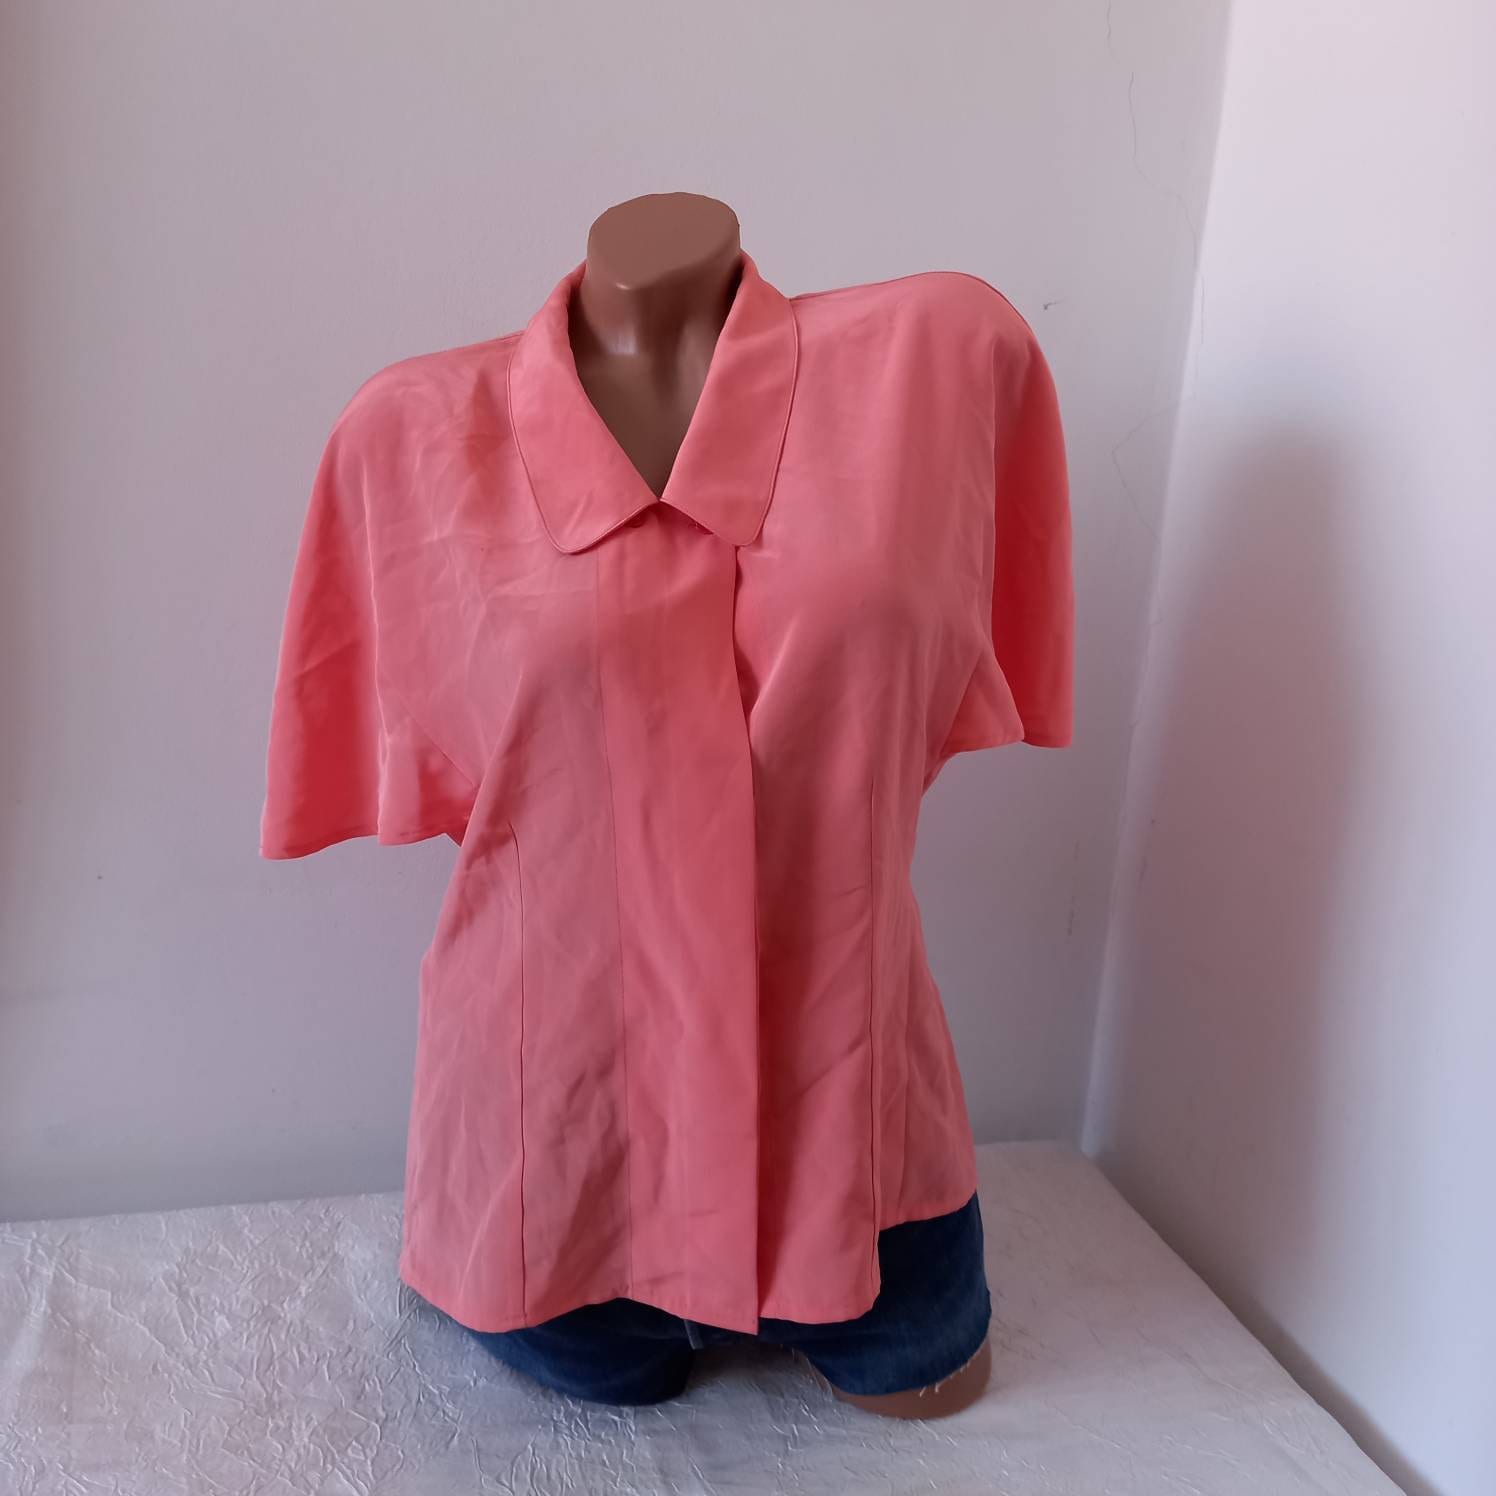 80Er Pink Blusen Vintage Coral Hemd Damen 1990Er Jahre Retro Kleidung Klassisch Frauen Kragen Festival Party M Kurzarm Elegantes von VintageSpiritUA